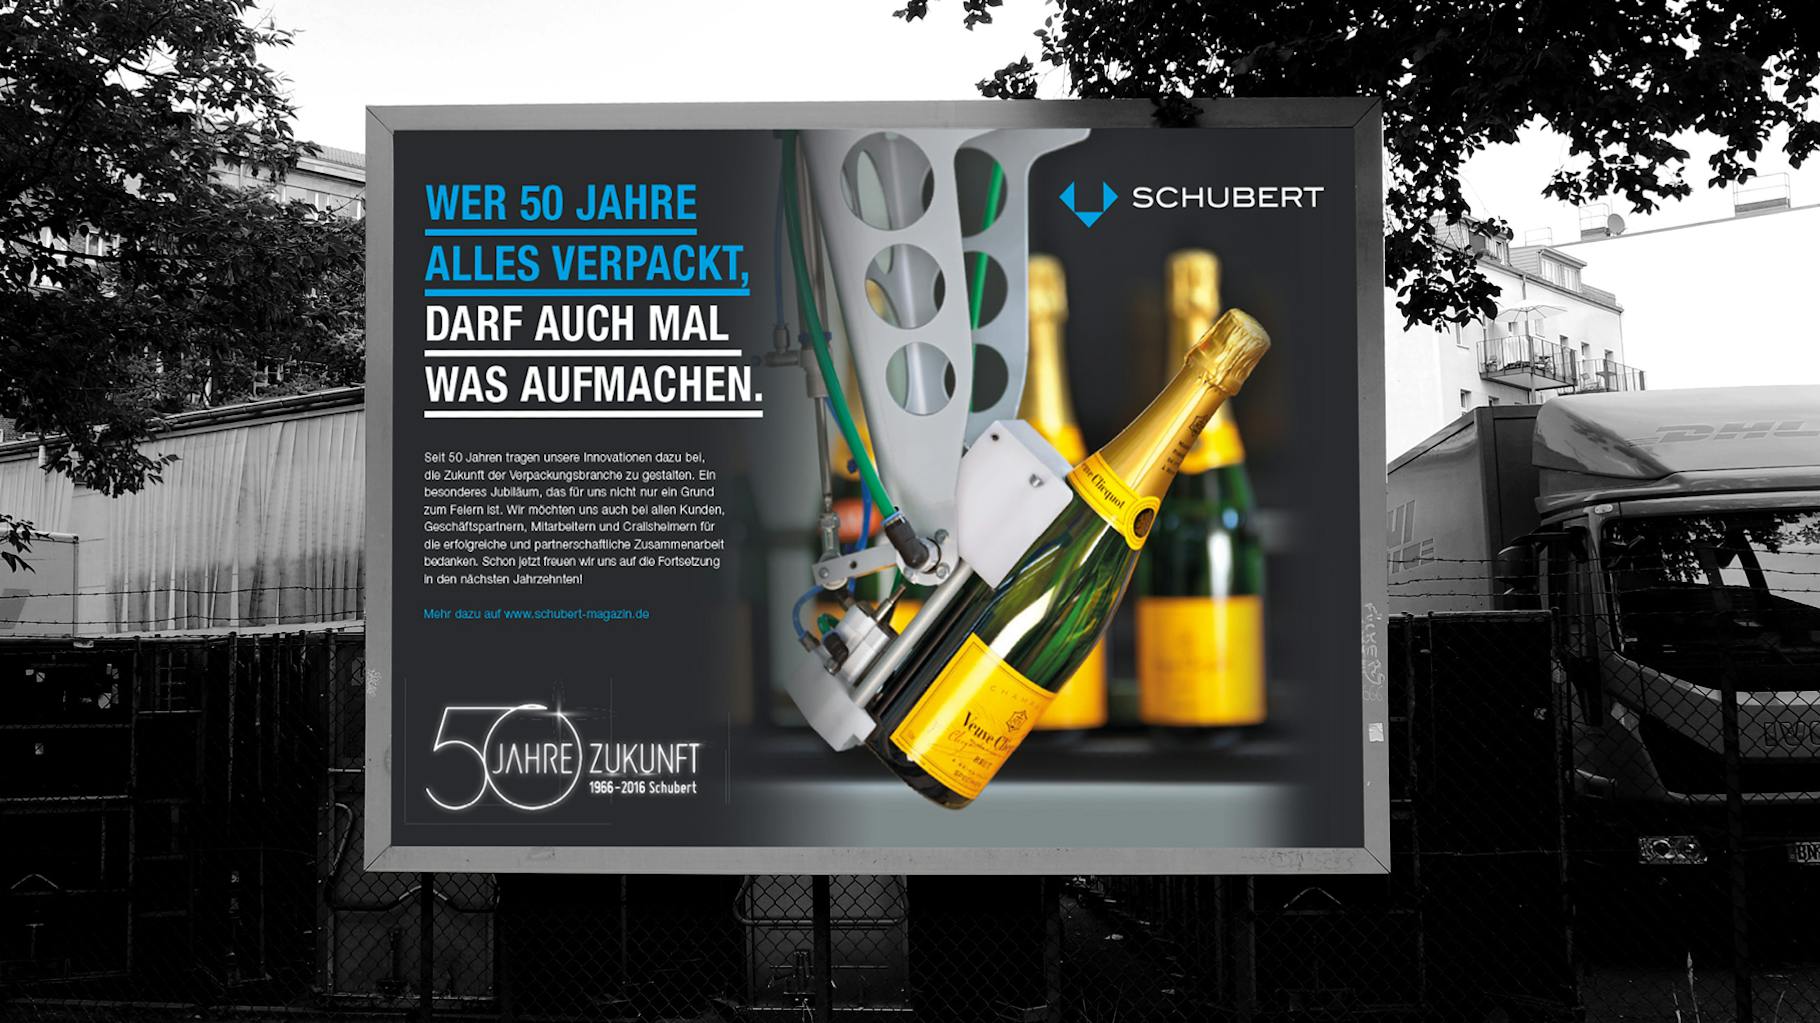 Das Bild zeigt den Banner von einer Werbeanzeige von dem Kunde Schubert zu dem 50 Jahre Jubiläum.